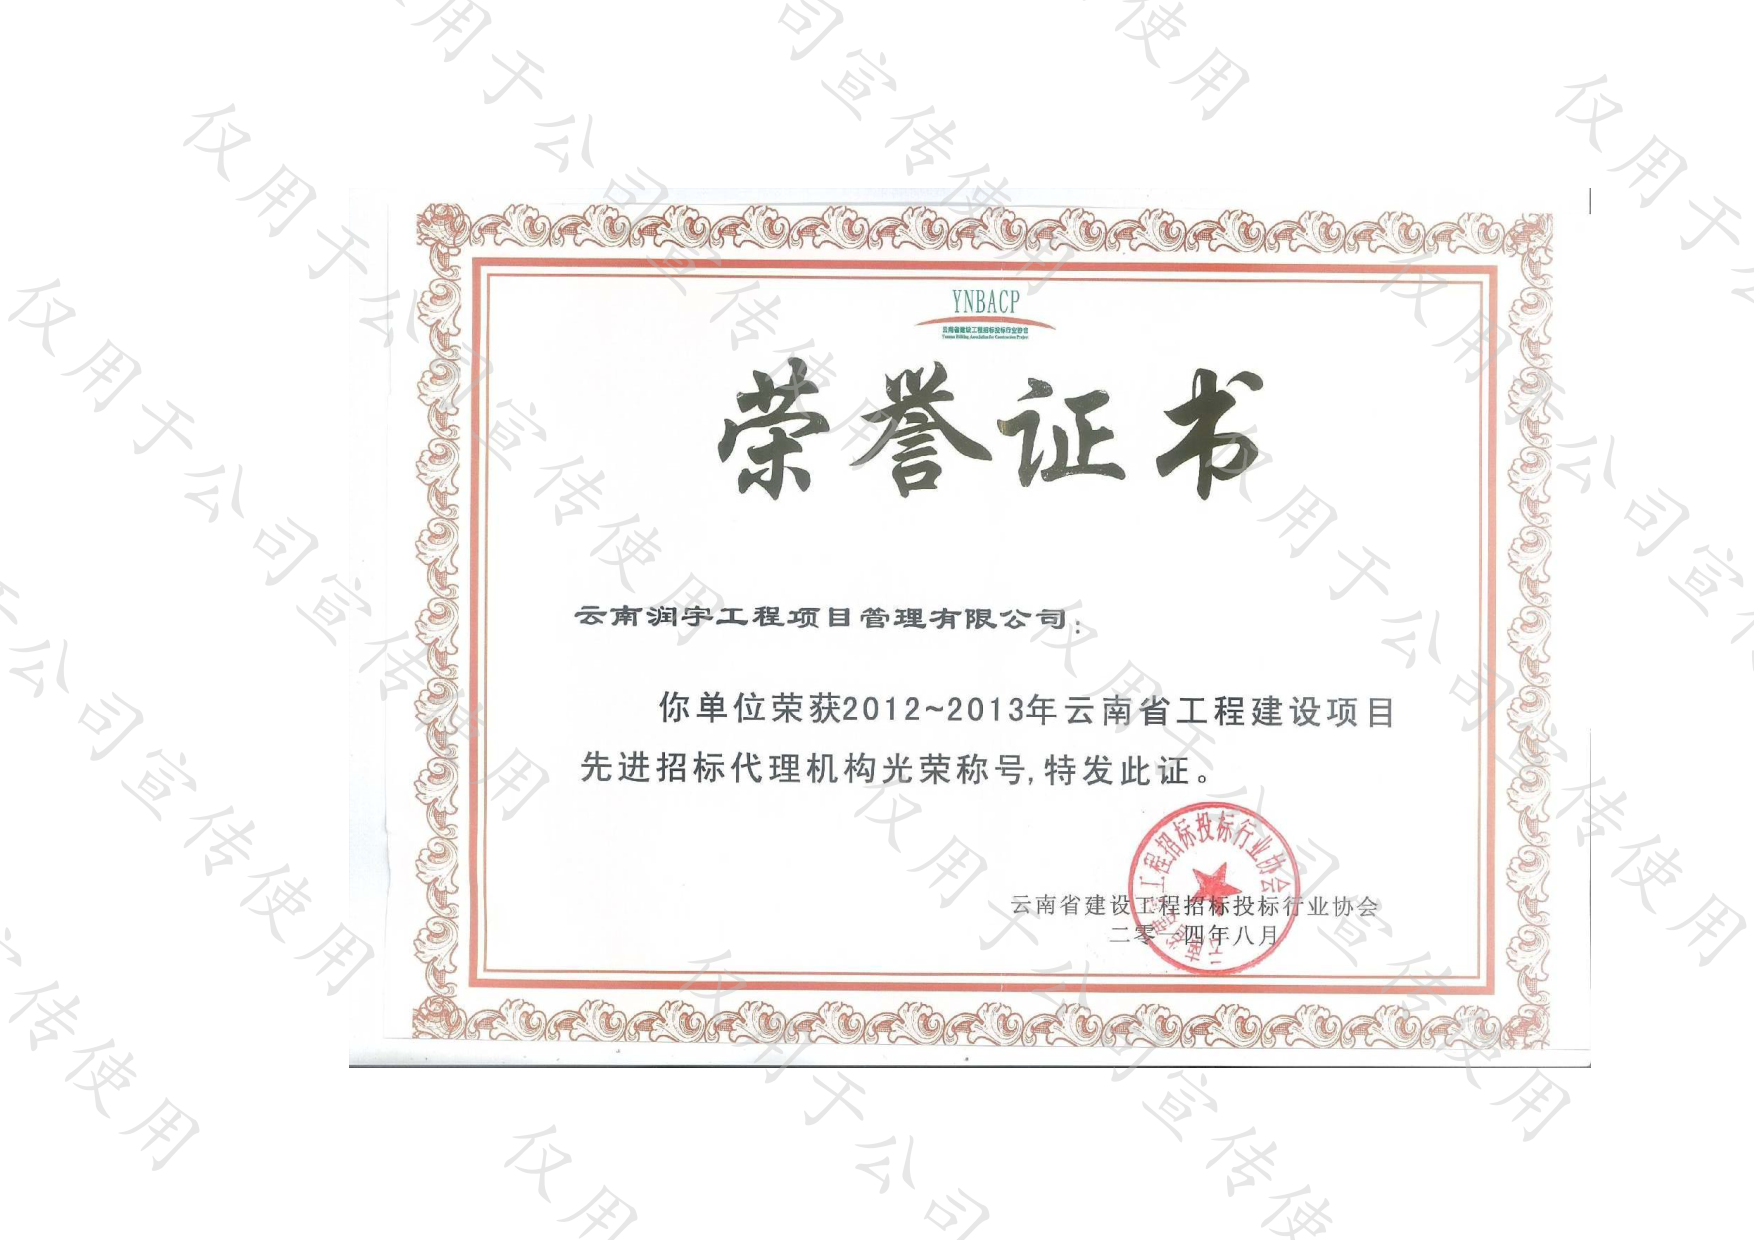 2012-2013年云南省工程建設項目先進招標代理機構